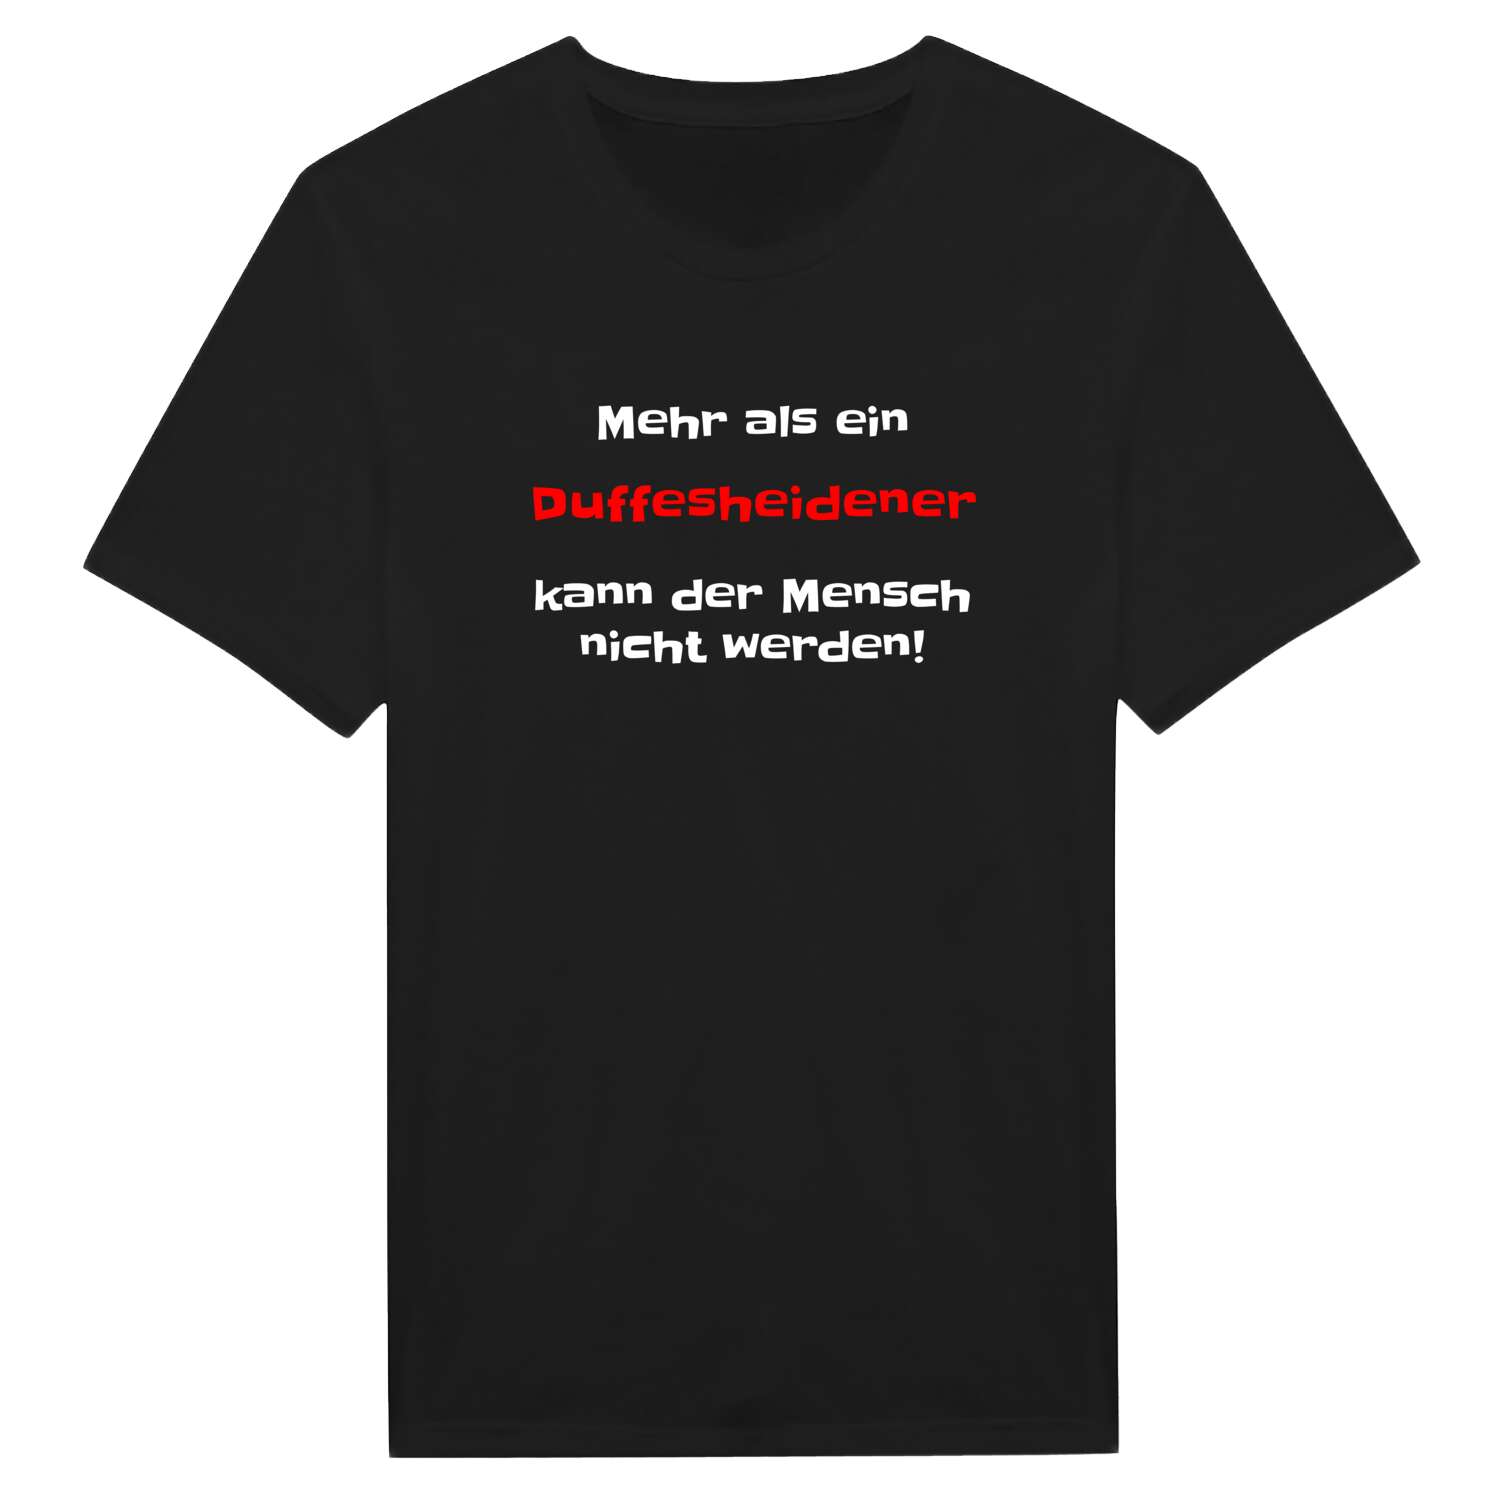 Duffesheide T-Shirt »Mehr als ein«